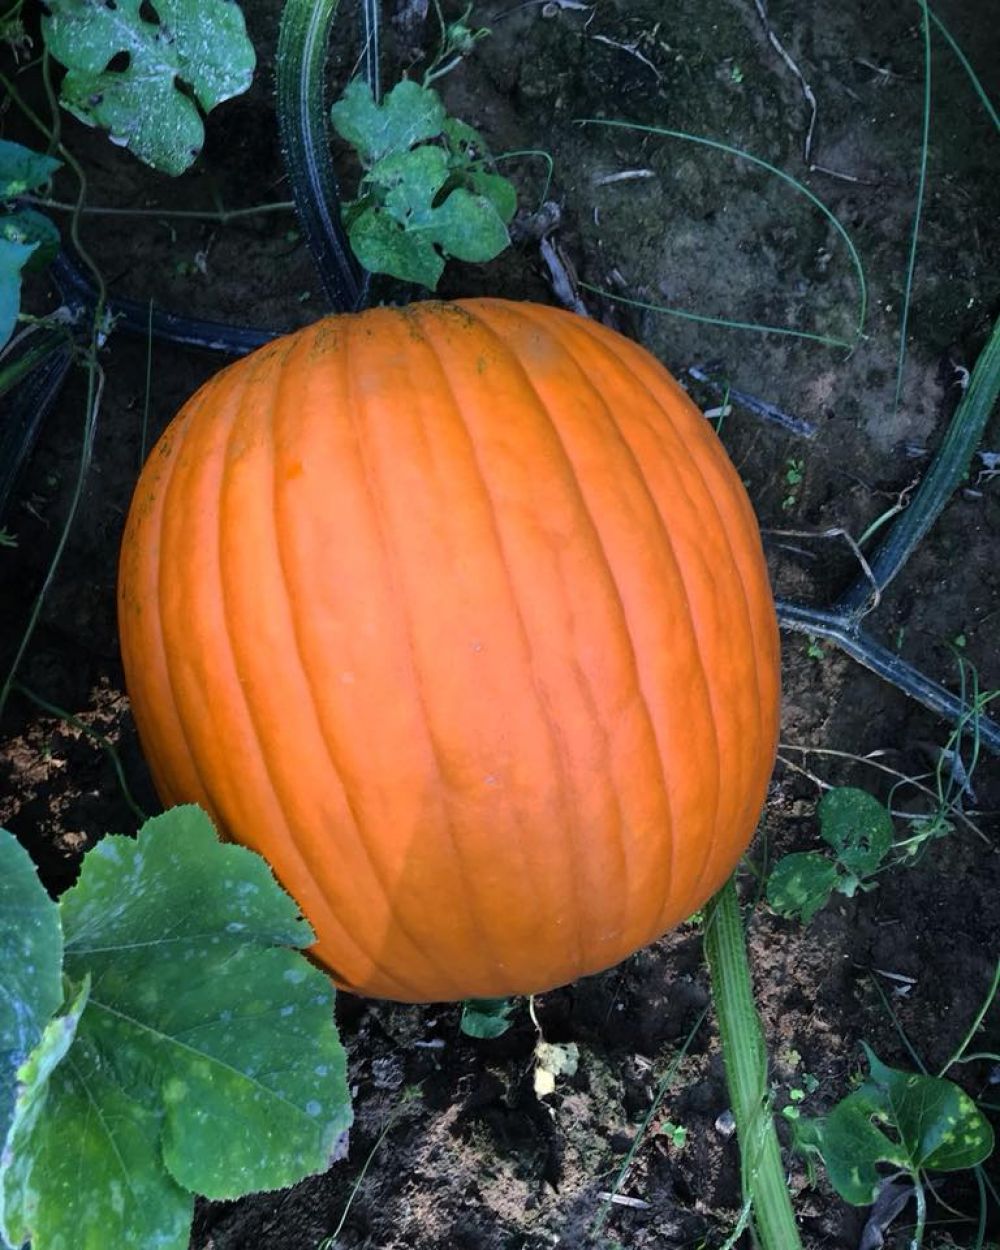 marlows-pumpkin-patch-mt-vernon-il-pumpkin